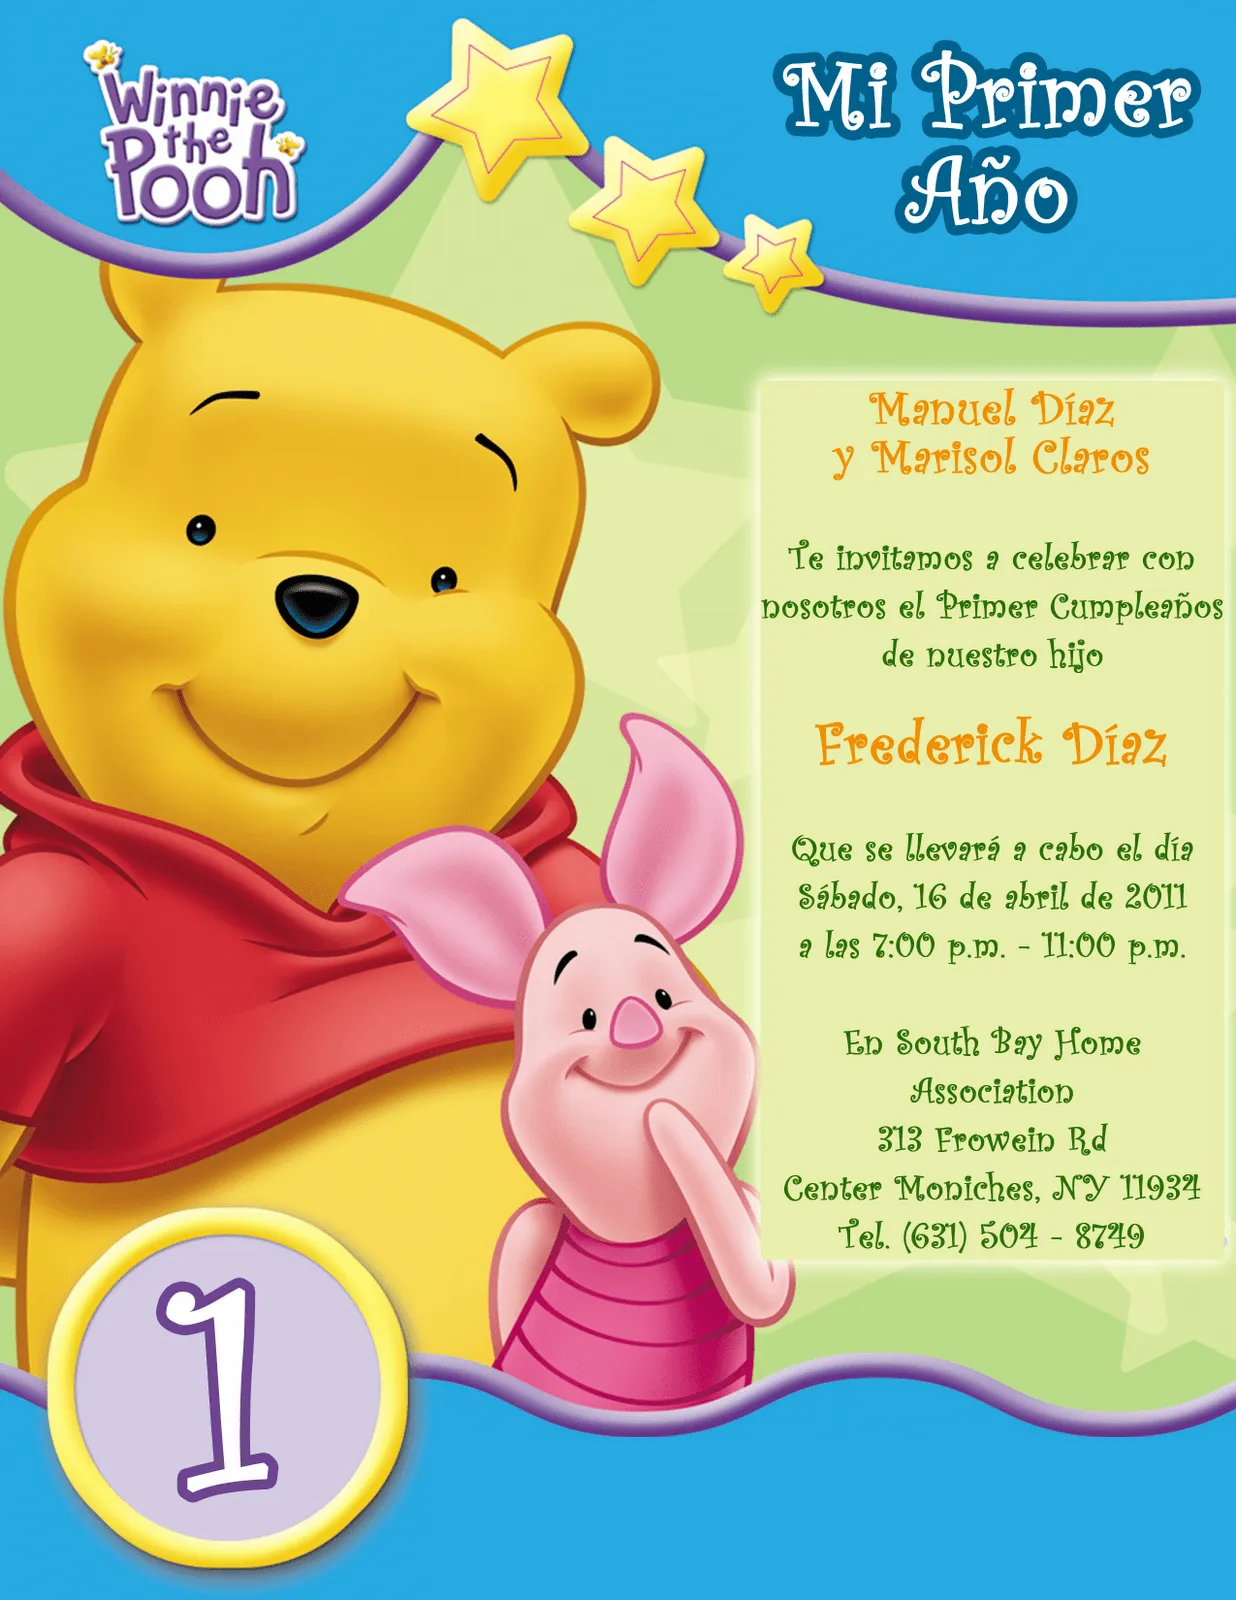 Invitación Infantil de Cumpleaños - Winnie the Pooh - 1 Año ...